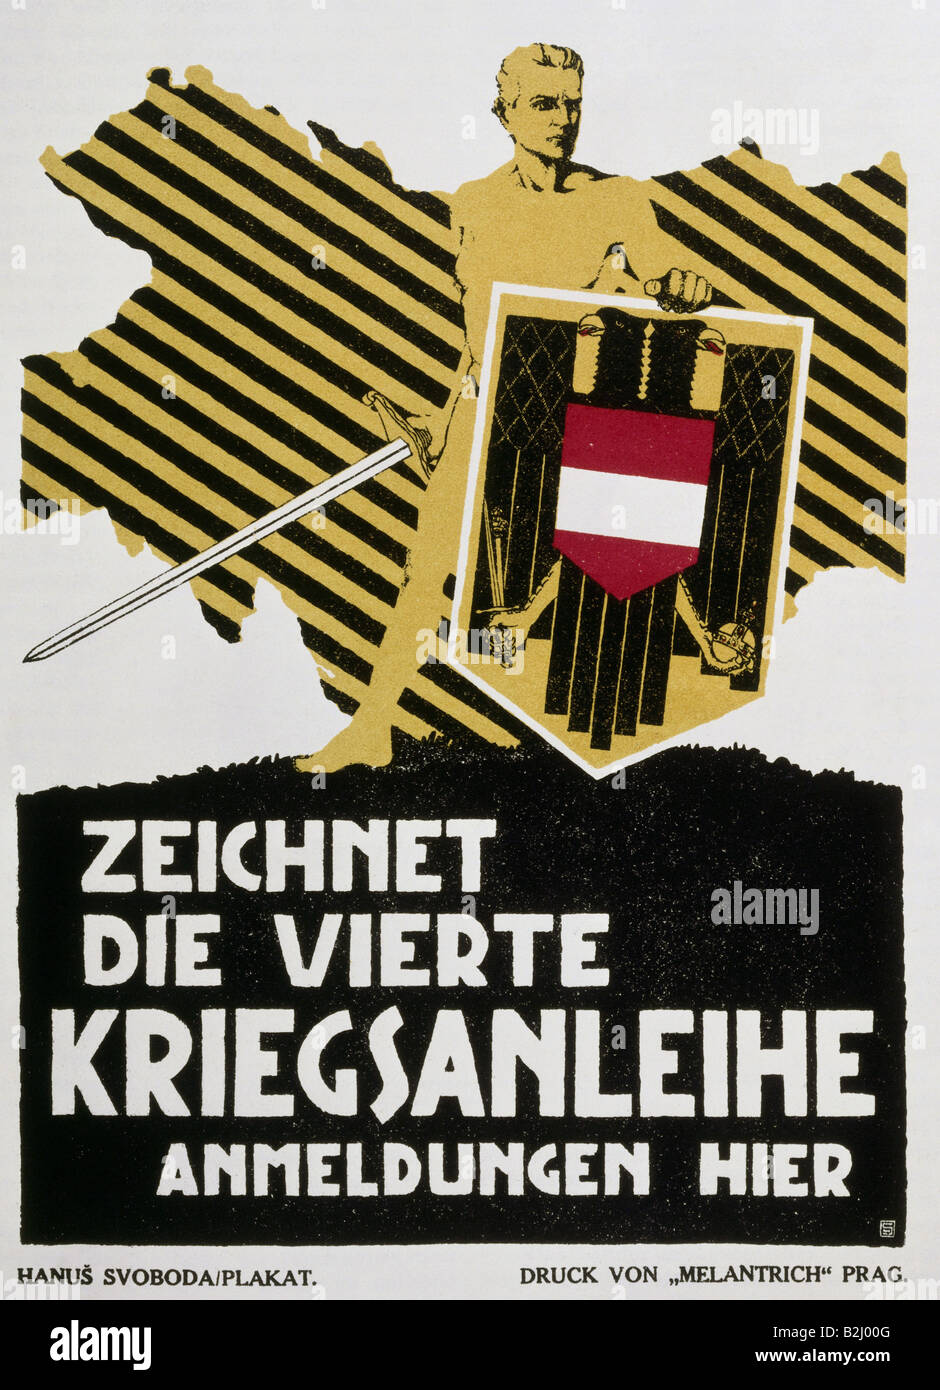 events, First World War / WWI, propaganda, poster 'Zeichnet die vierte Kriegsanleihe' (Buy the 4th war bond), by Hanus Svoboda, Austria-Hungary, April 1916, Stock Photo